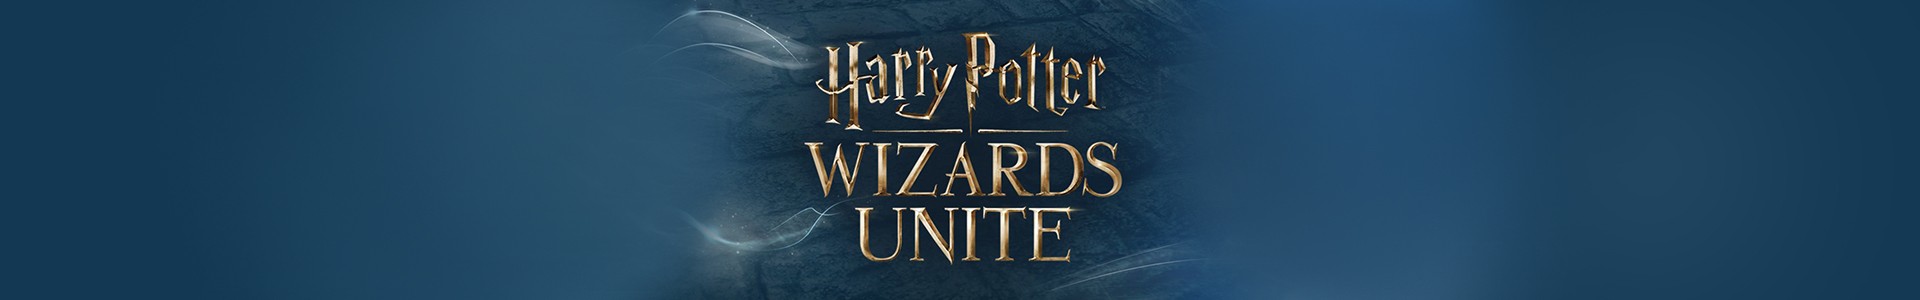 Harry Potter Wizards Unite: O novo jogo no estilo Pokémon Go